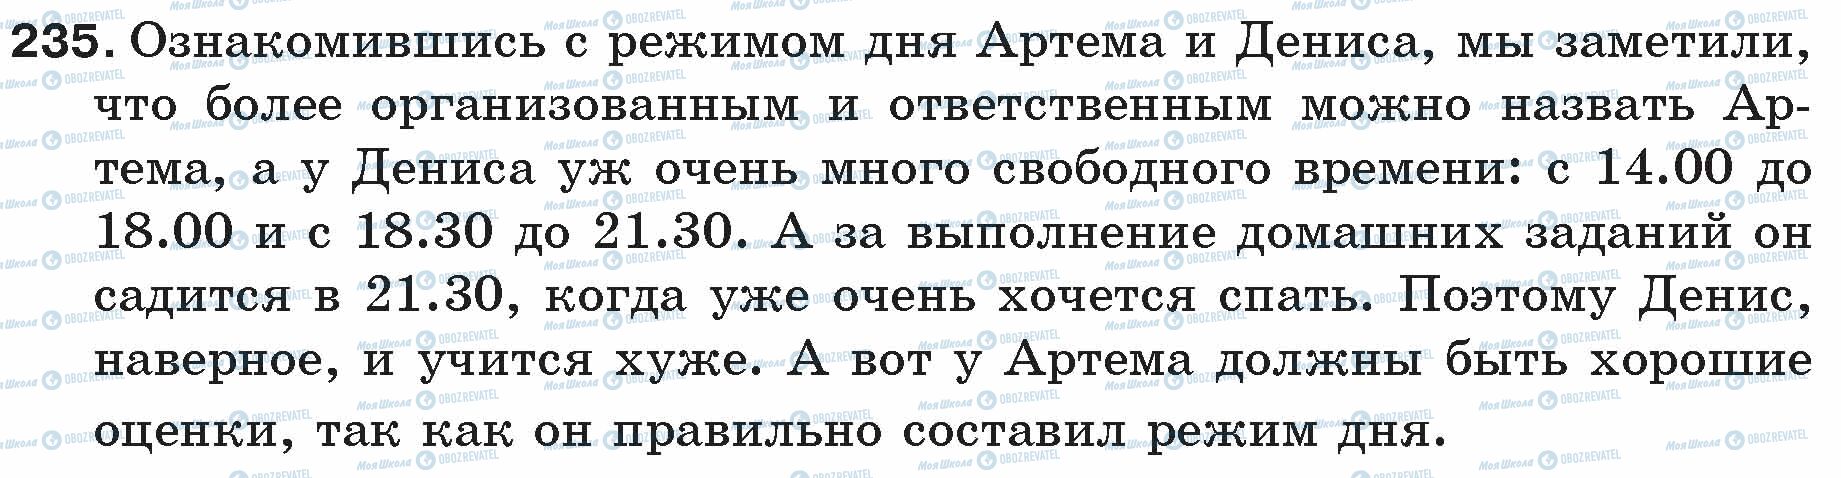 ГДЗ Російська мова 5 клас сторінка 235